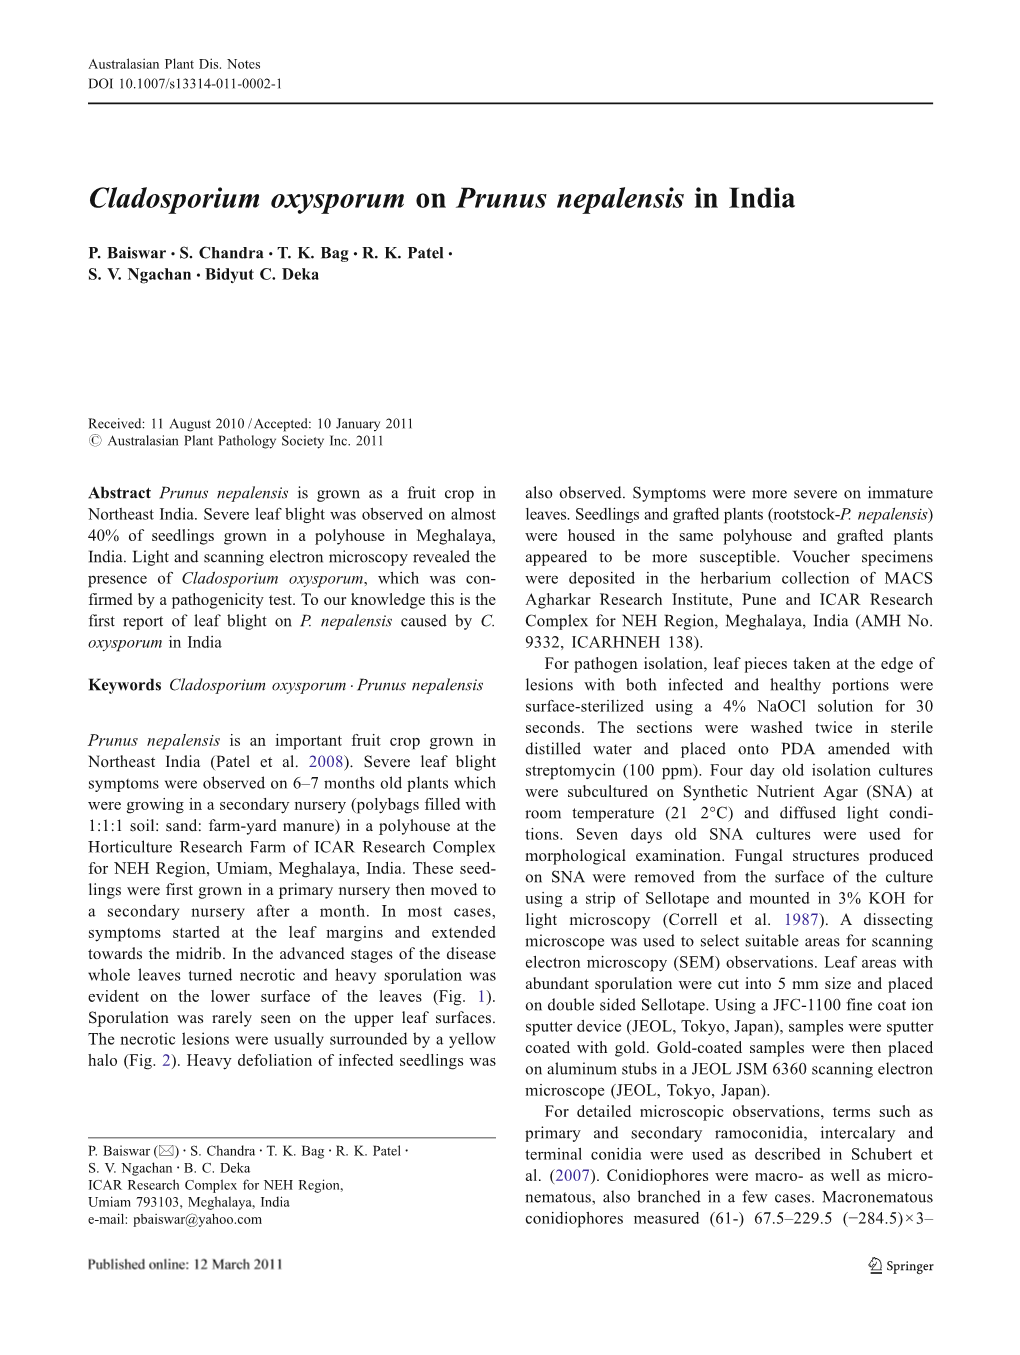 Cladosporium Oxysporum on Prunus Nepalensis in India